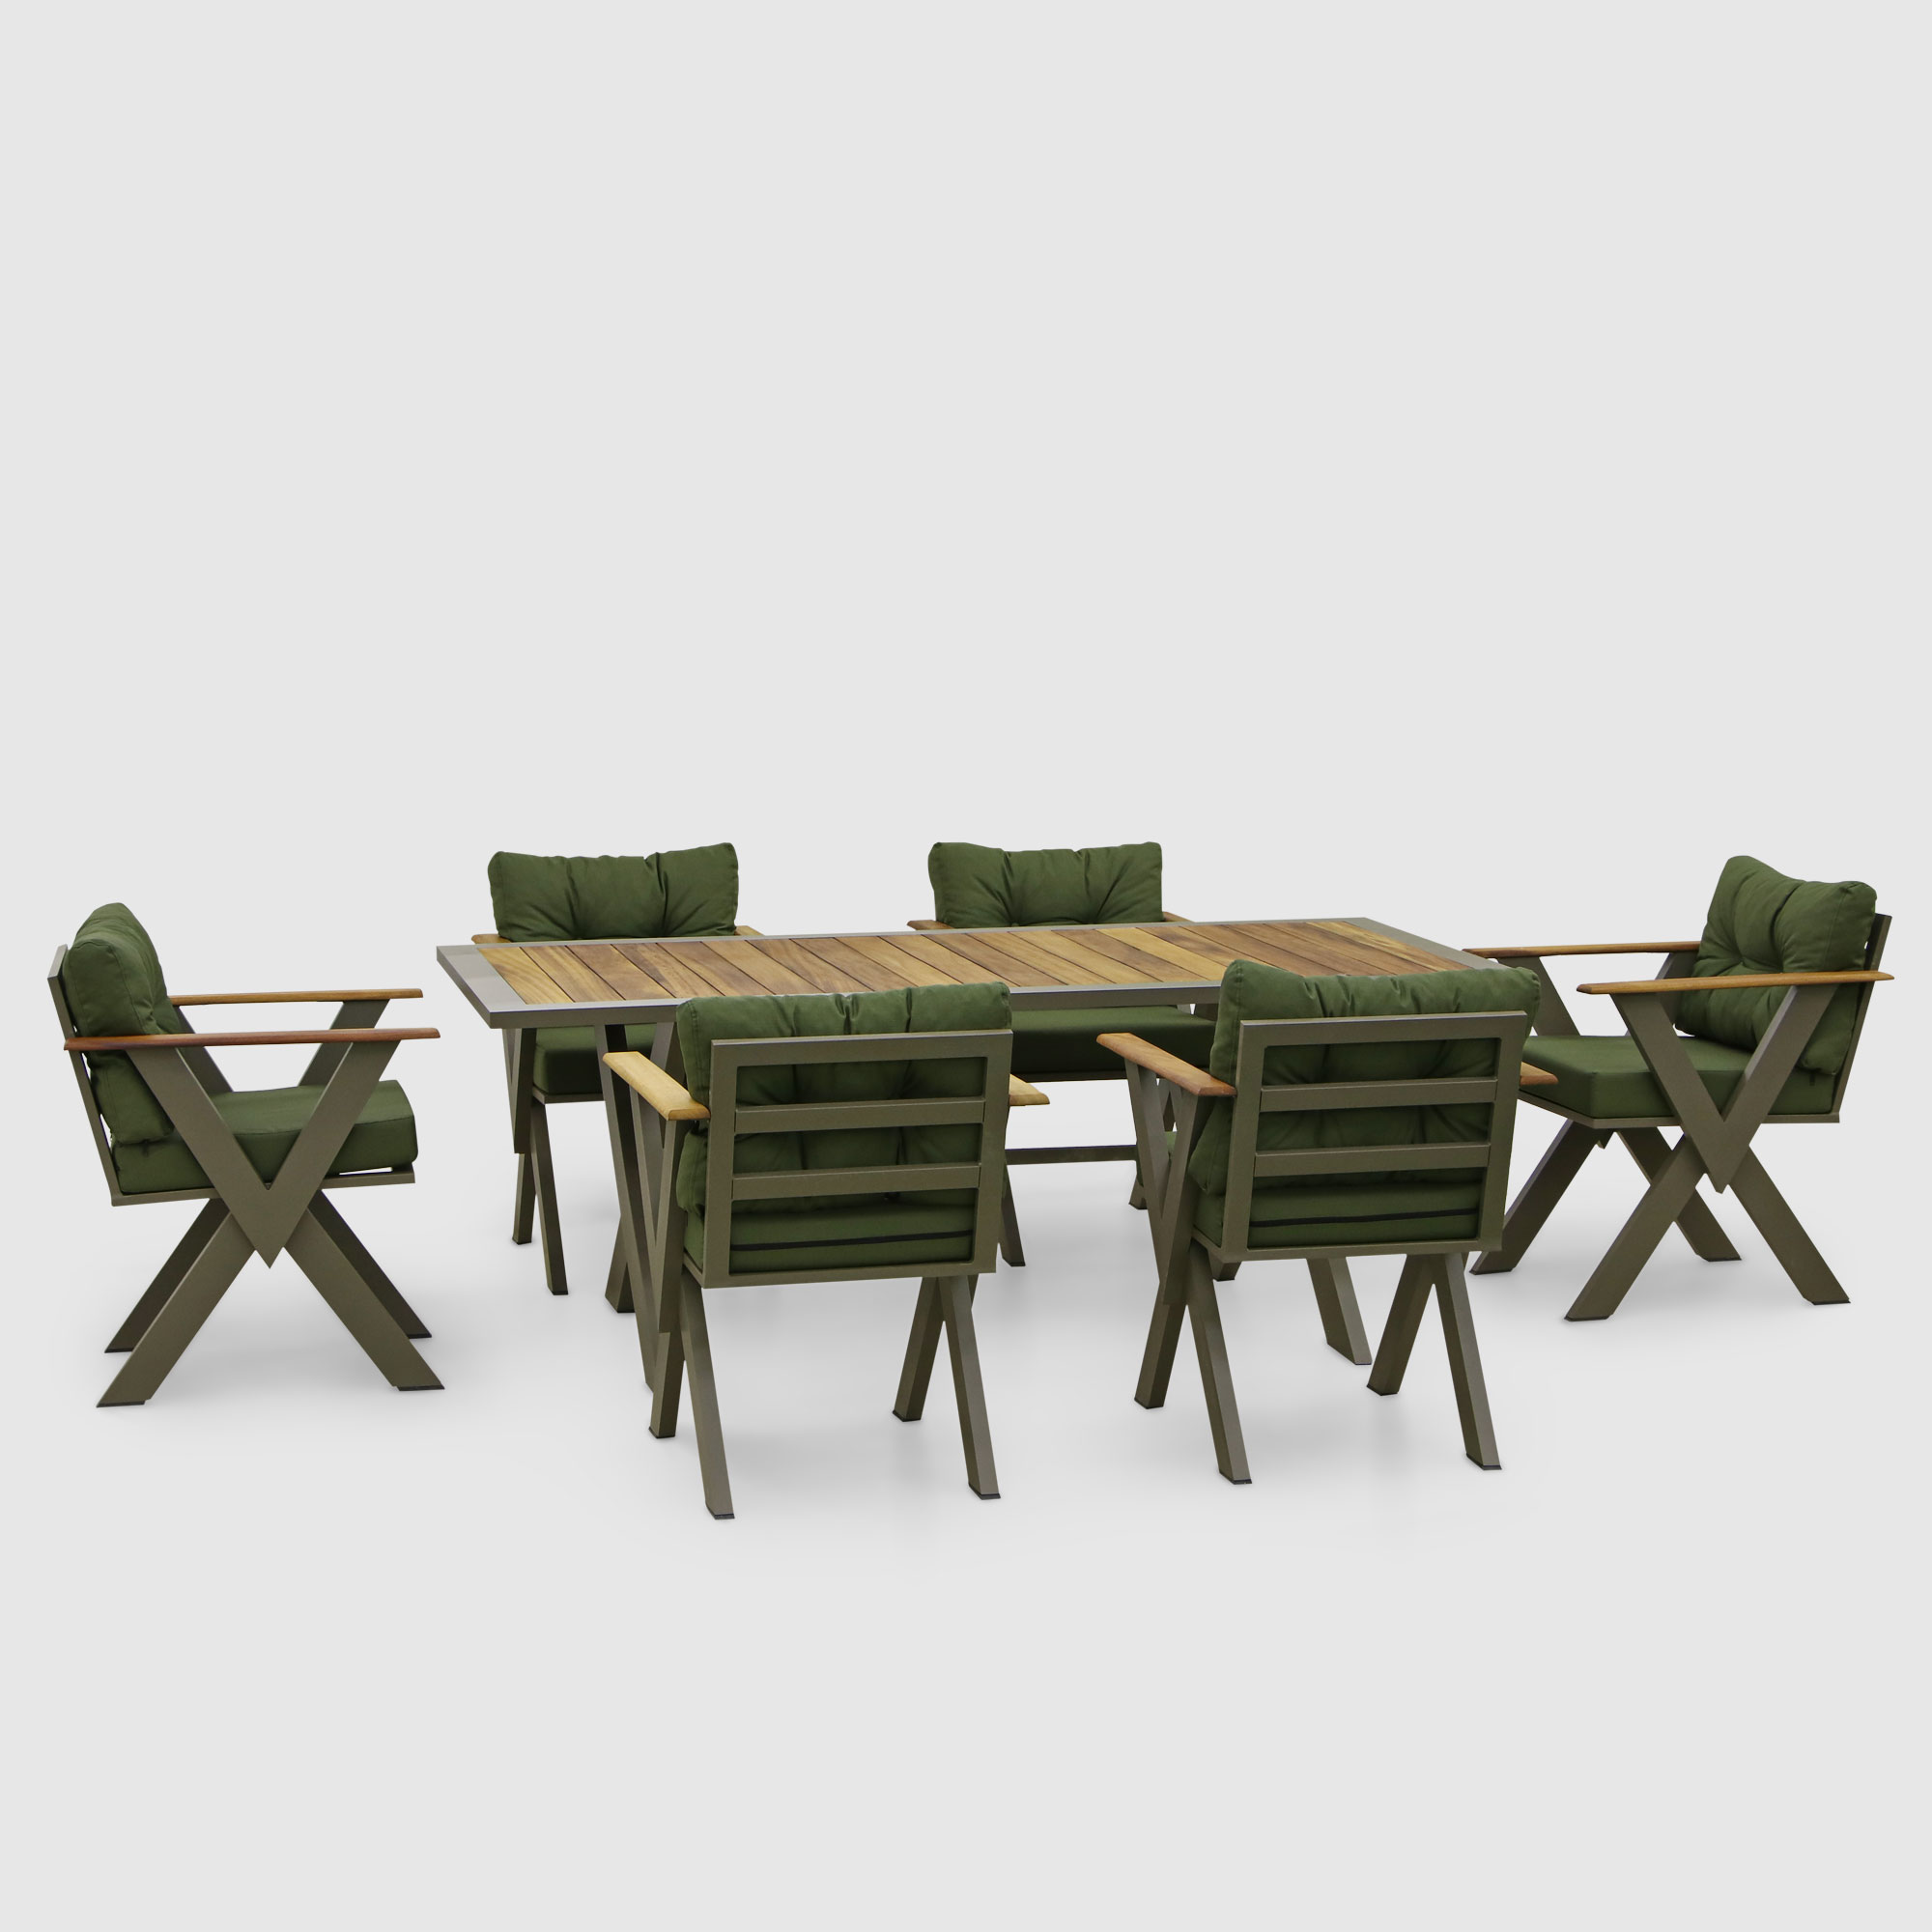 Комплект мебели Emek garden Toledo зеленый 7 предметов toledo saddle футляр для часов